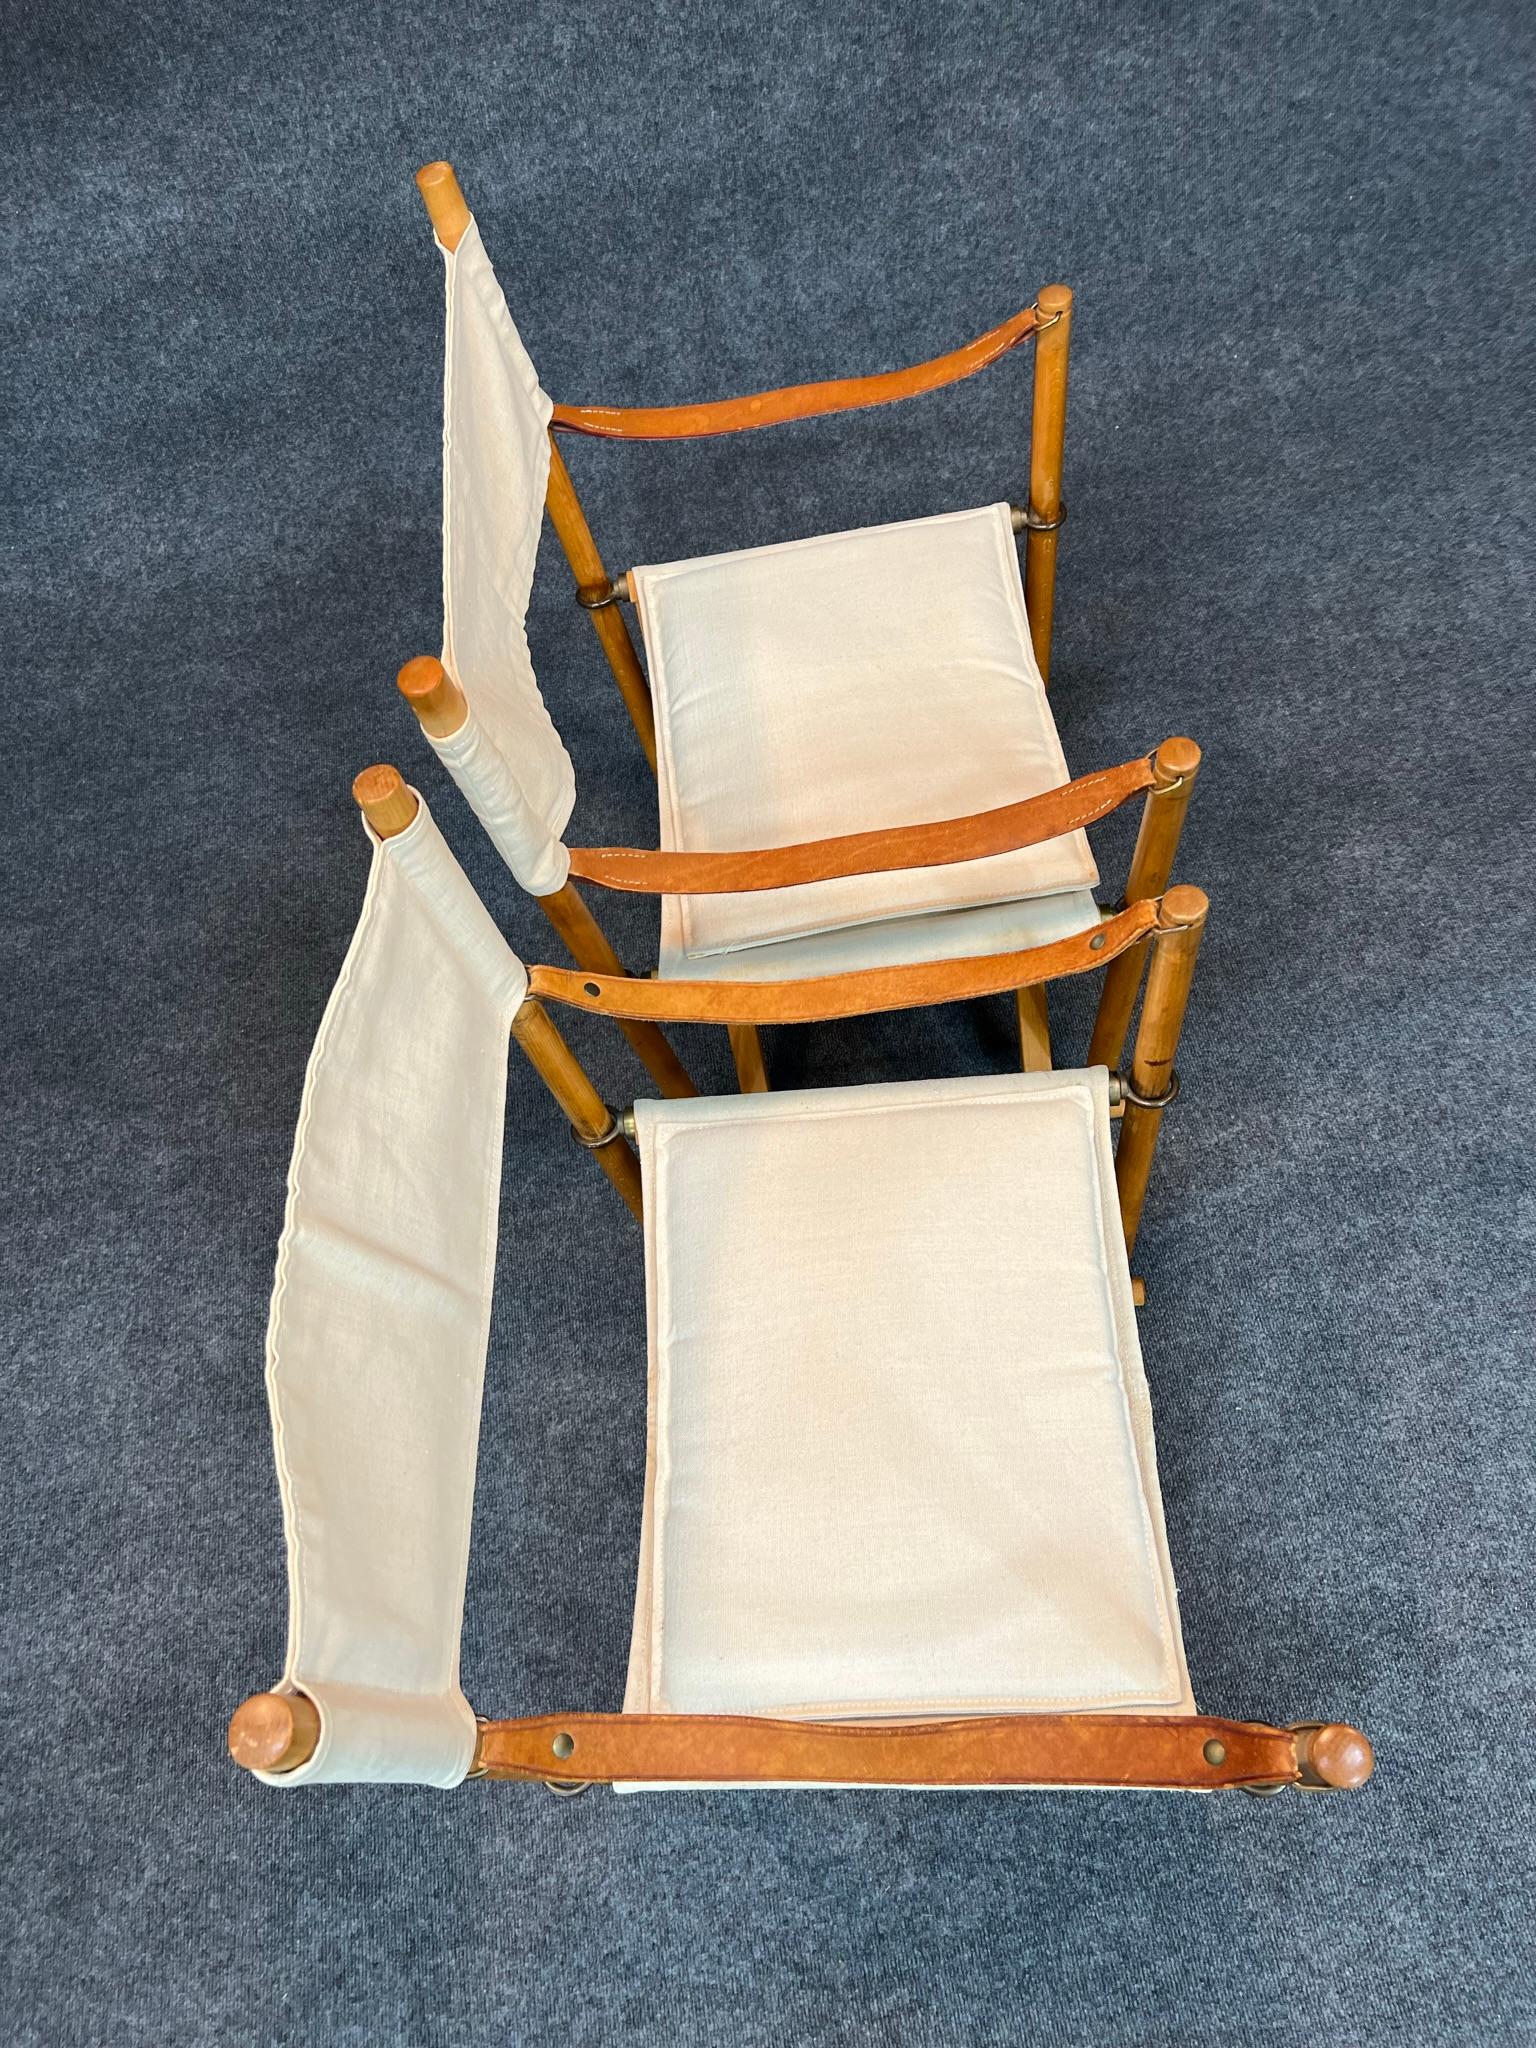 Zwei dänische moderne klappbare Safaristühle (Modell MK-16), entworfen von Mogens Koch im Jahr 1932, einer hergestellt von Rud. Rasmussen und die andere von Cado. Hergestellt aus natürlichem Buchenholz und Messing. Rückenlehne, Sitz und Kissen aus